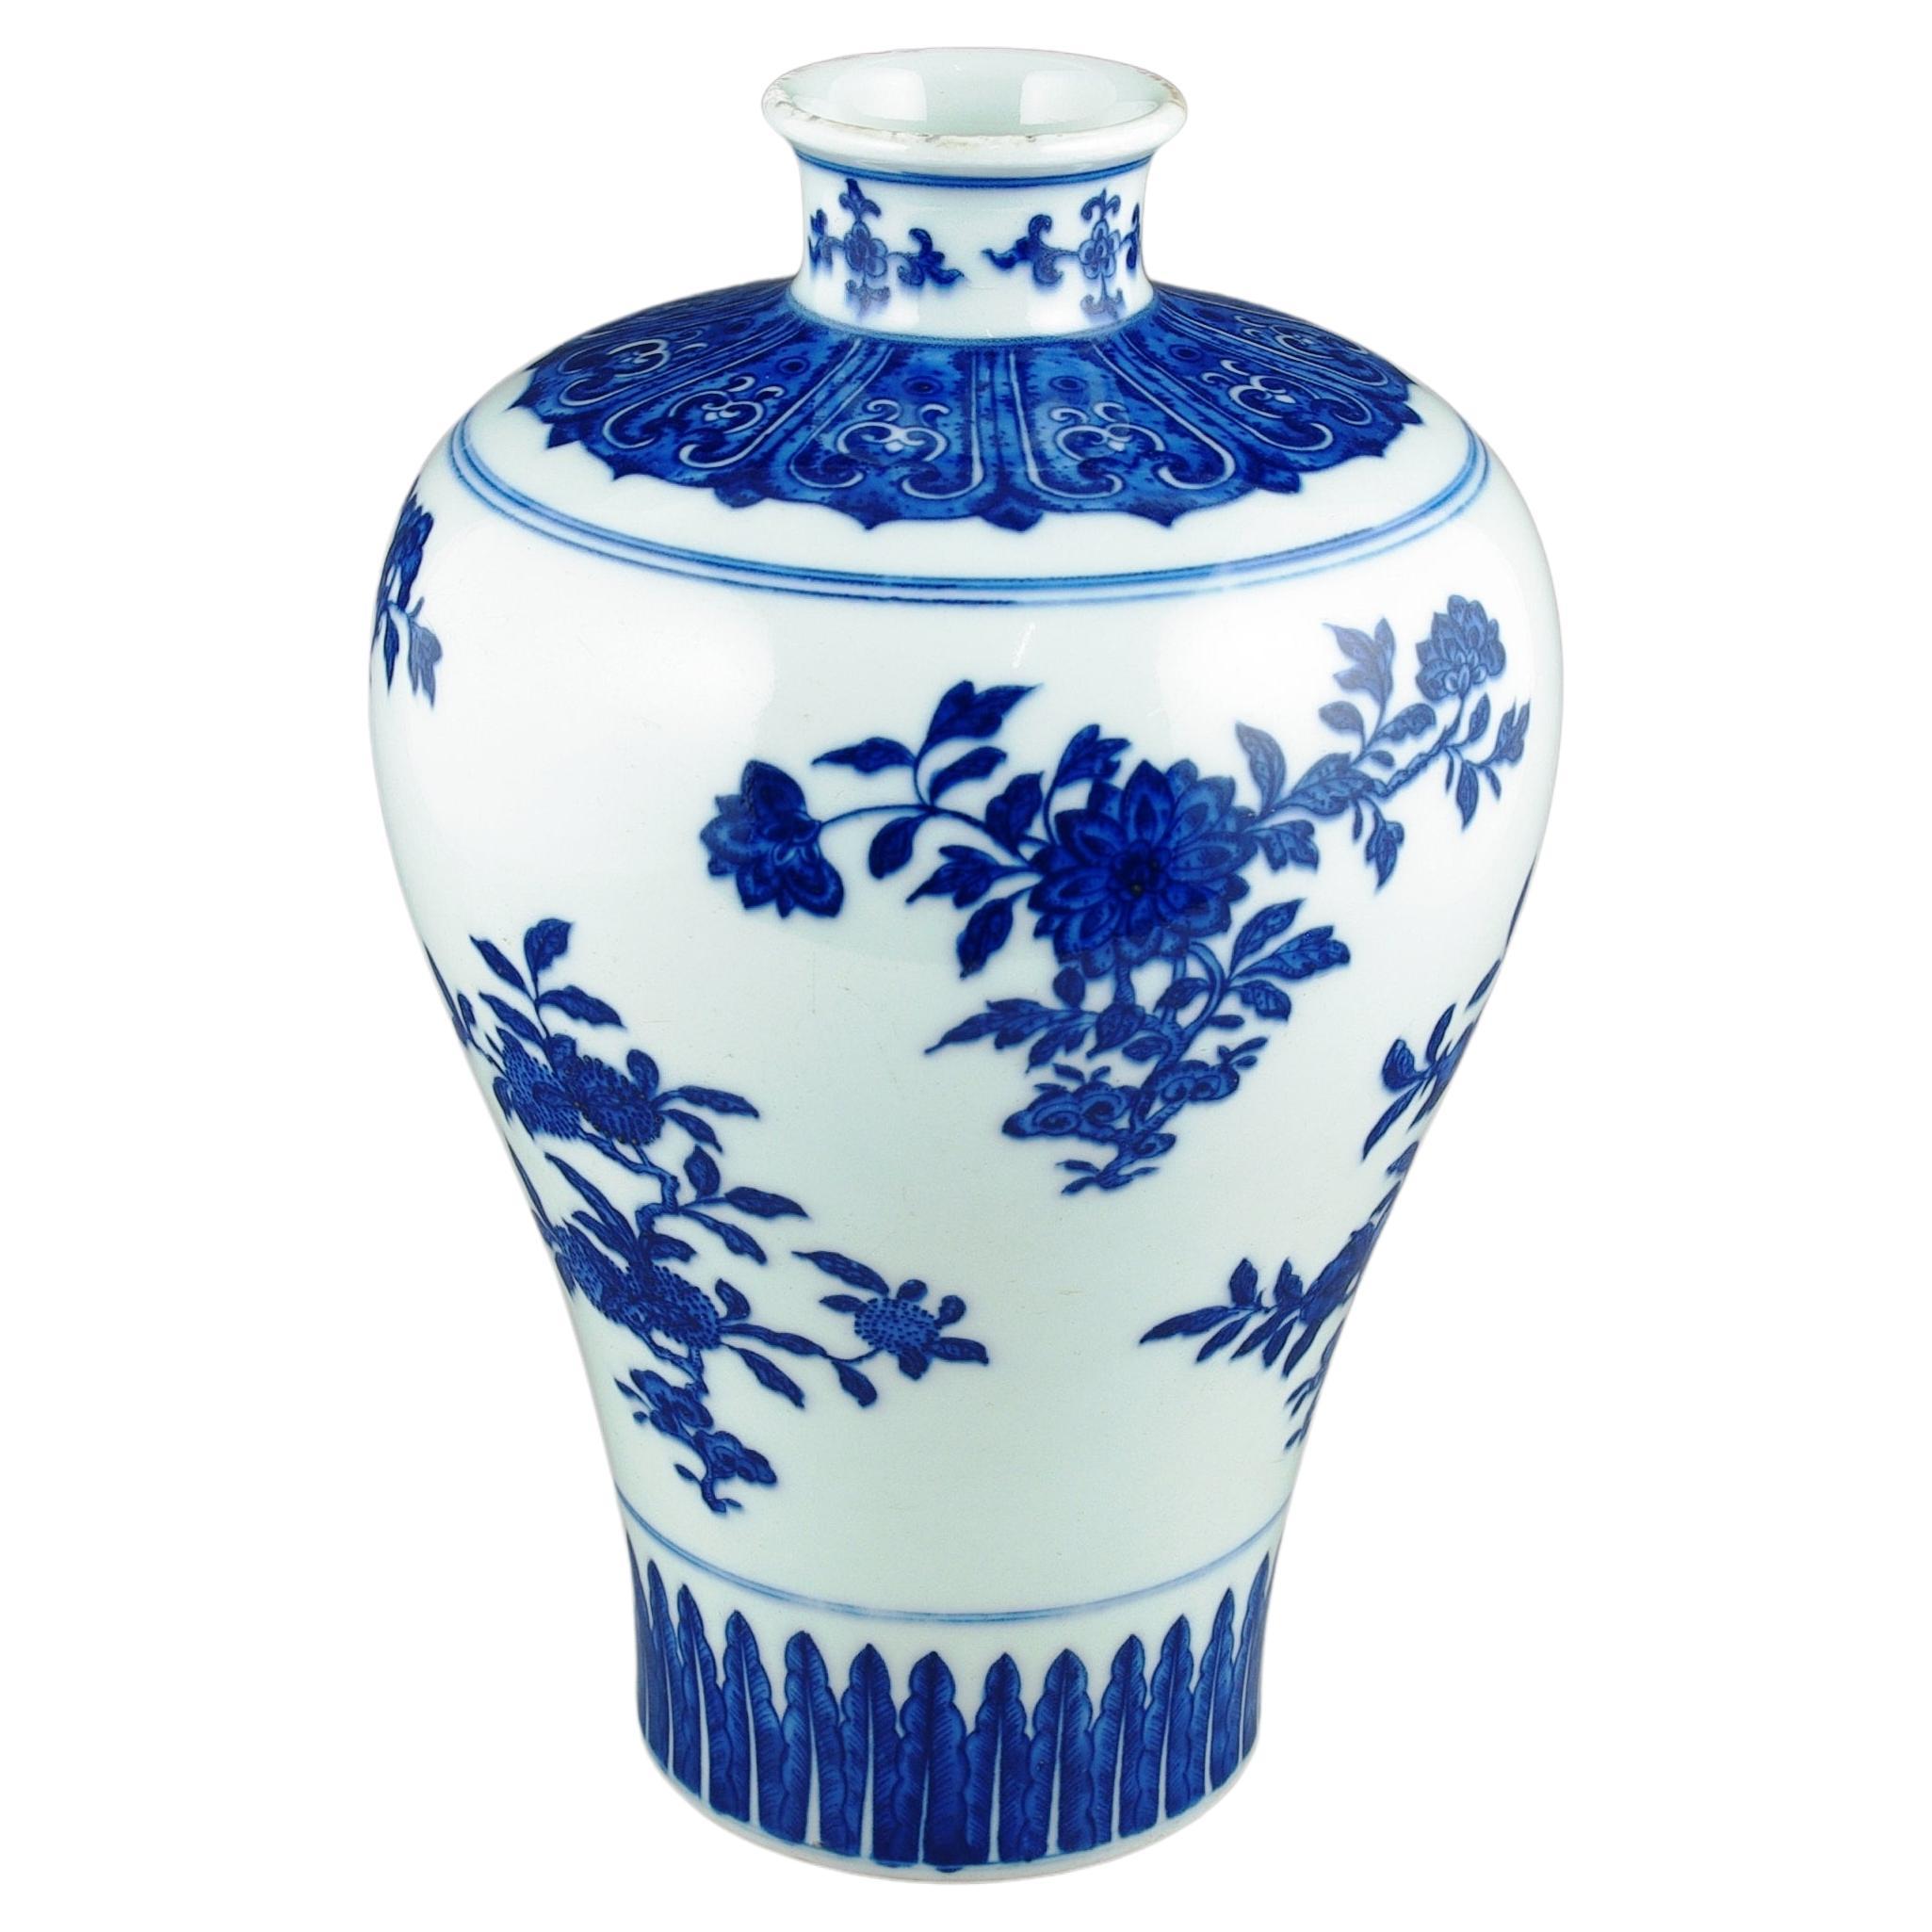 Nous avons le plaisir de vous présenter ce vase Meiping en porcelaine chinoise bleue et blanche du XXe siècle, splendide mélange de savoir-faire et de peinture à la main de l'artisan et de l'esthétique traditionnelle du style Qing. Ce vase témoigne